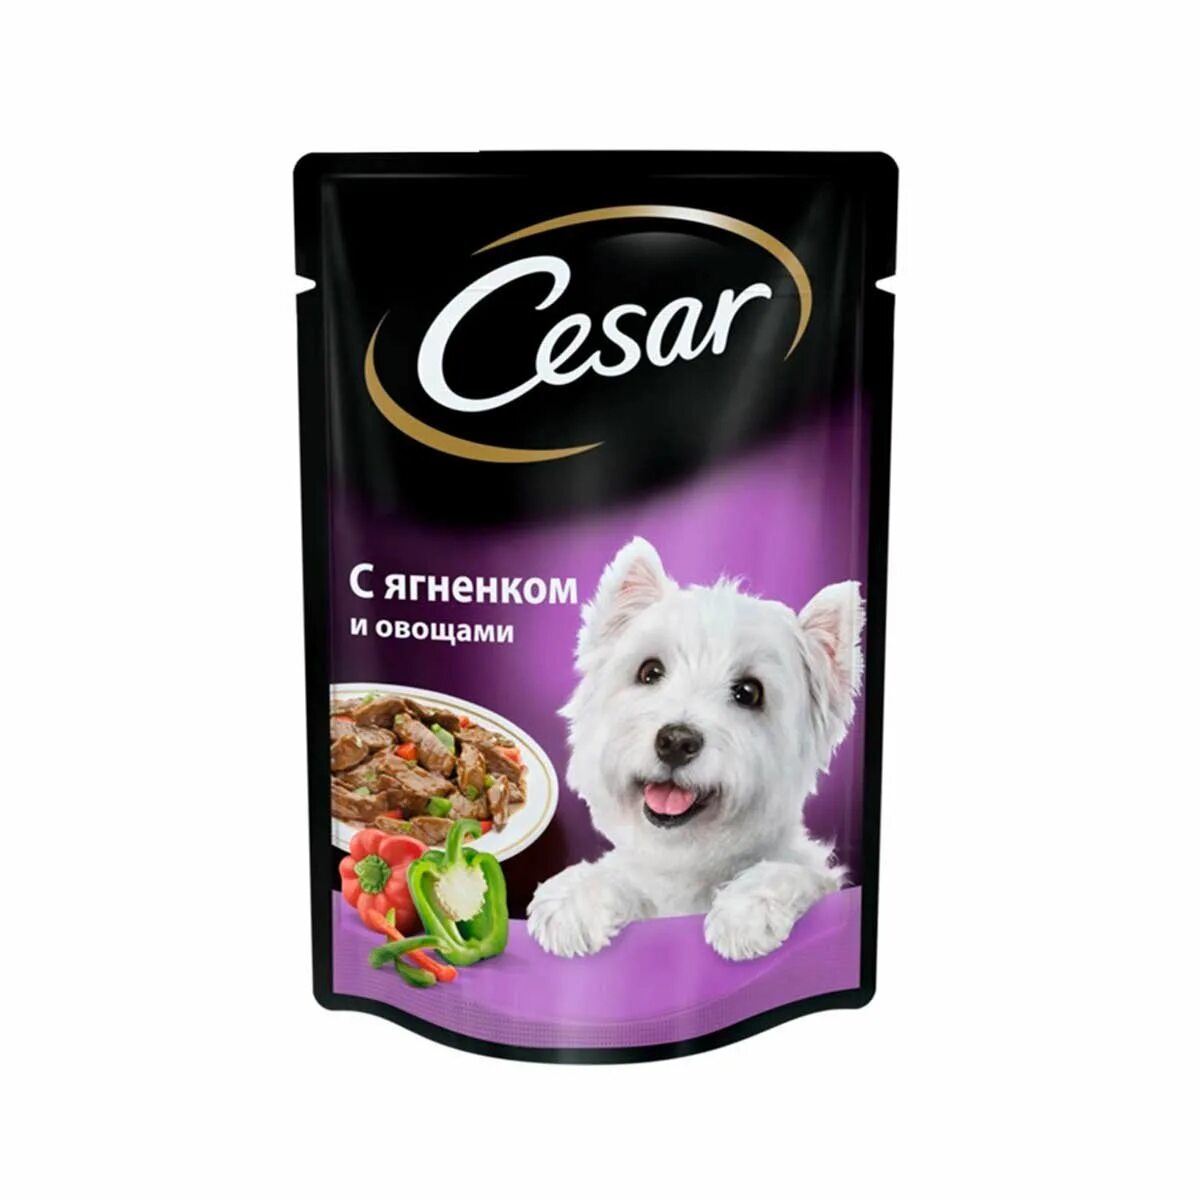 Вайлдберриз корм для собак. Корм для собак Cesar ягненок 100г. Корм для собак Cesar ягненок в сырном соусе 100г. Влажный корм для собак Cesar. Сезар корм влажный для собак.